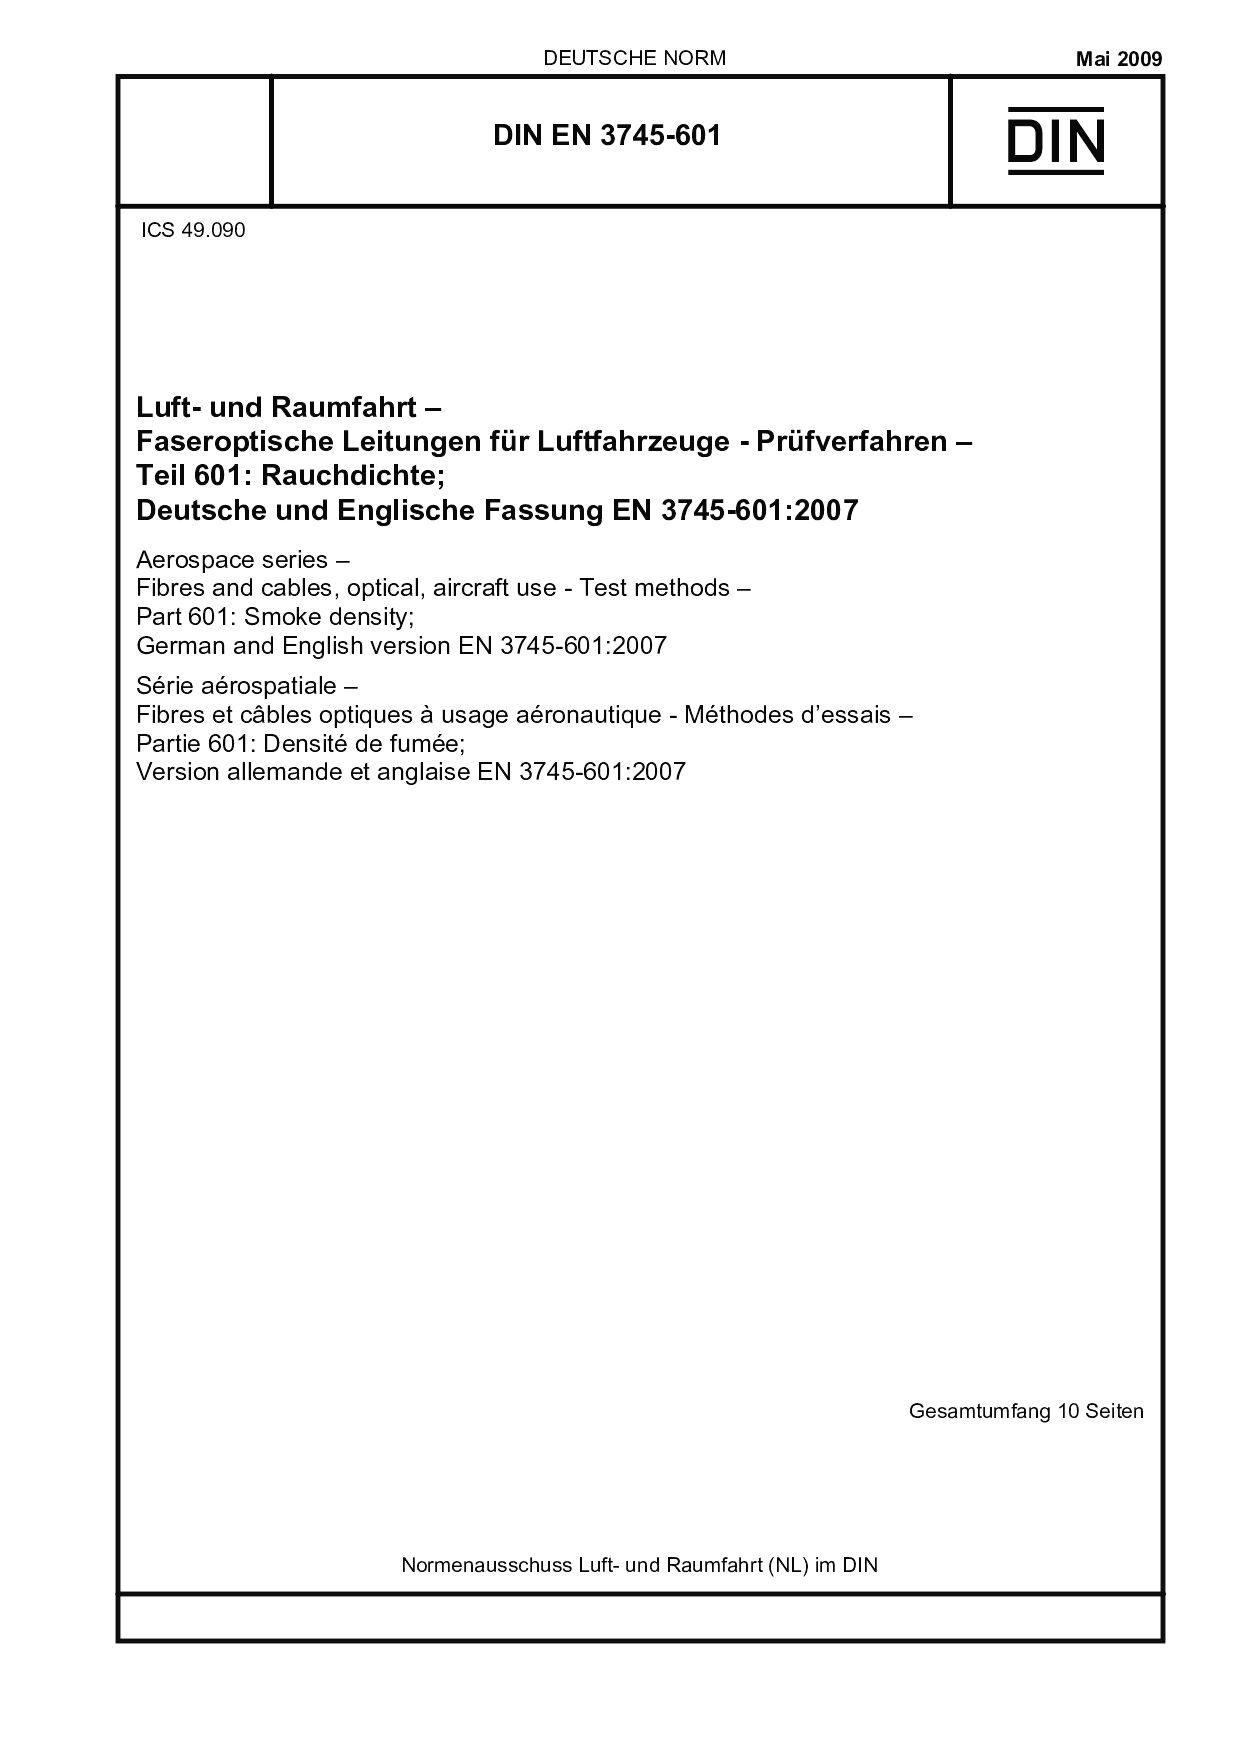 DIN EN 3745-601:2009封面图